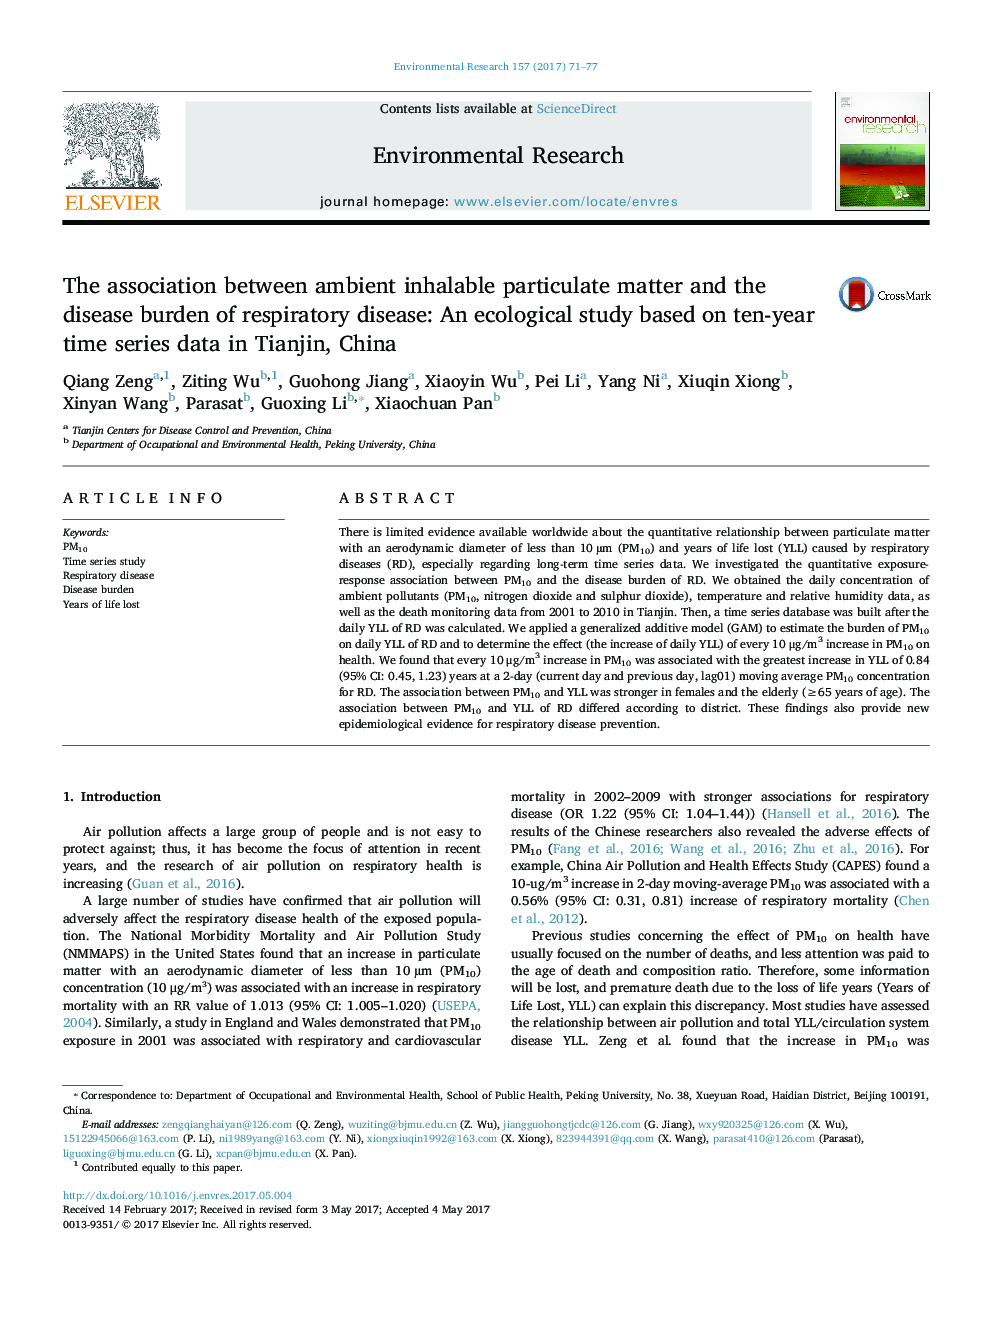 ارتباط بین ذرات محیطی در معرض انسولین و بیماری تنفسی: یک مطالعه اکولوژیک بر اساس داده های سری زمانی ده ساله در تیانجین، چین 